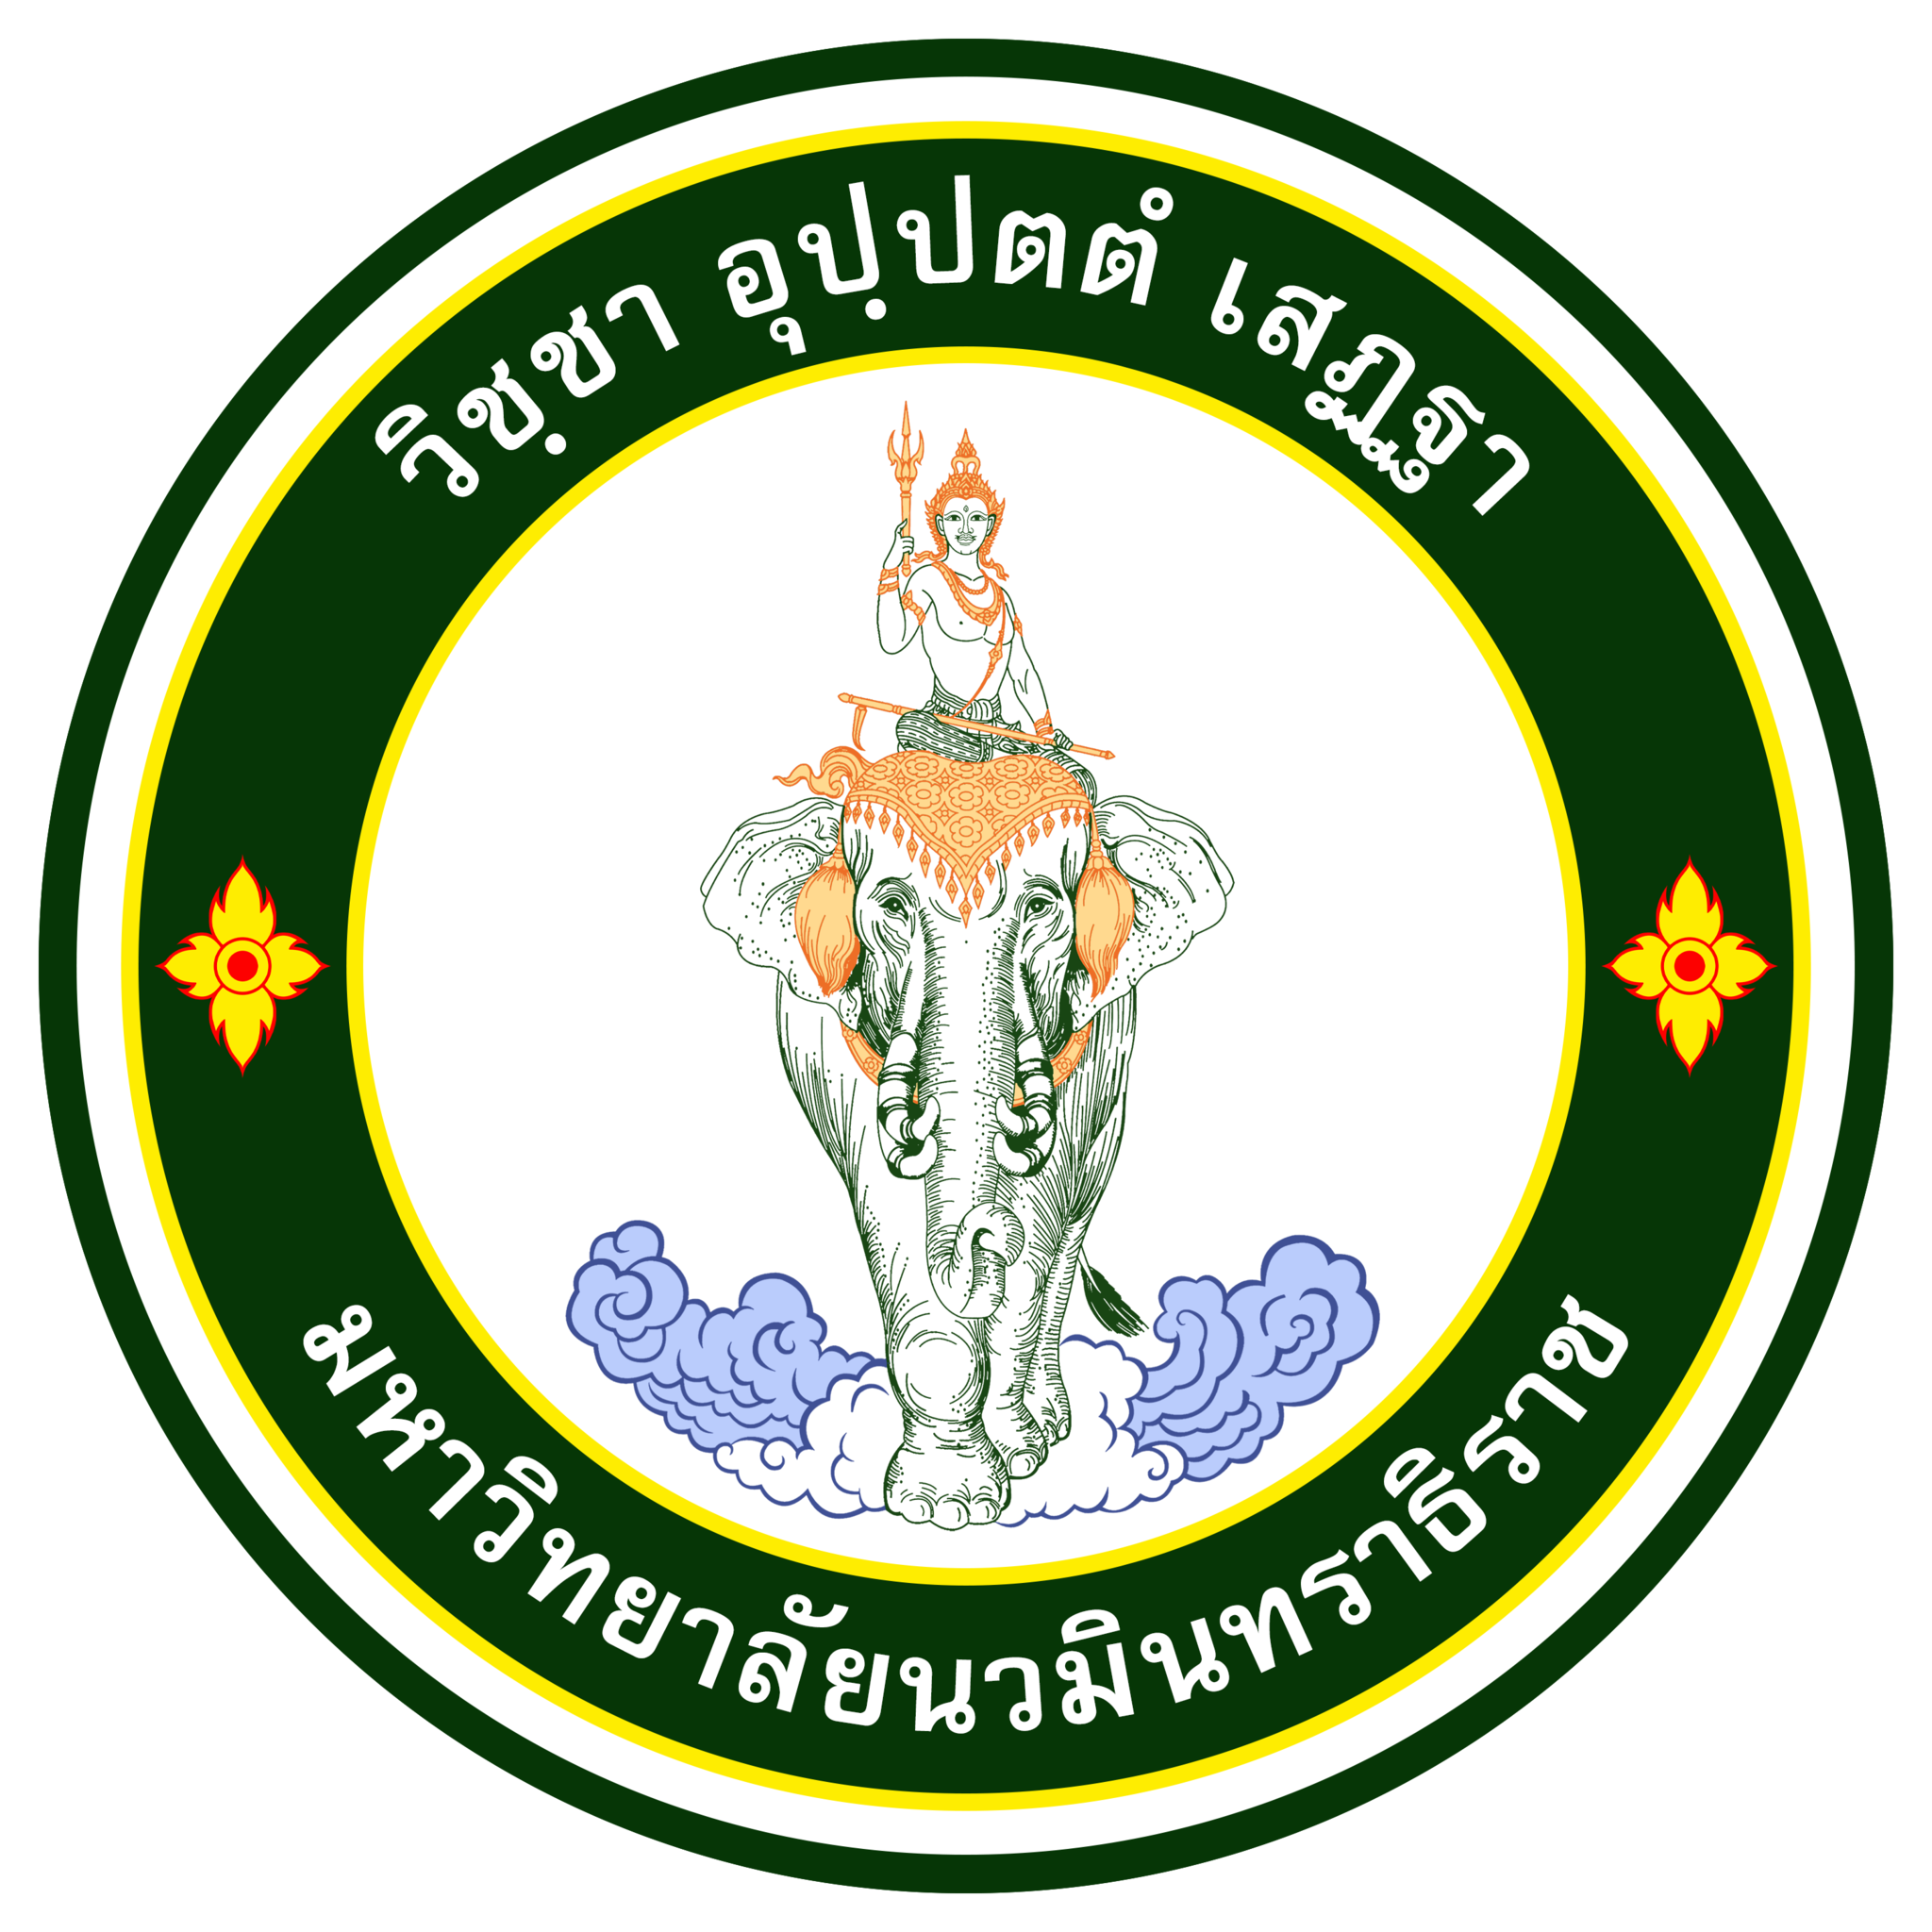 Navamindradhiraj_University_Emblem